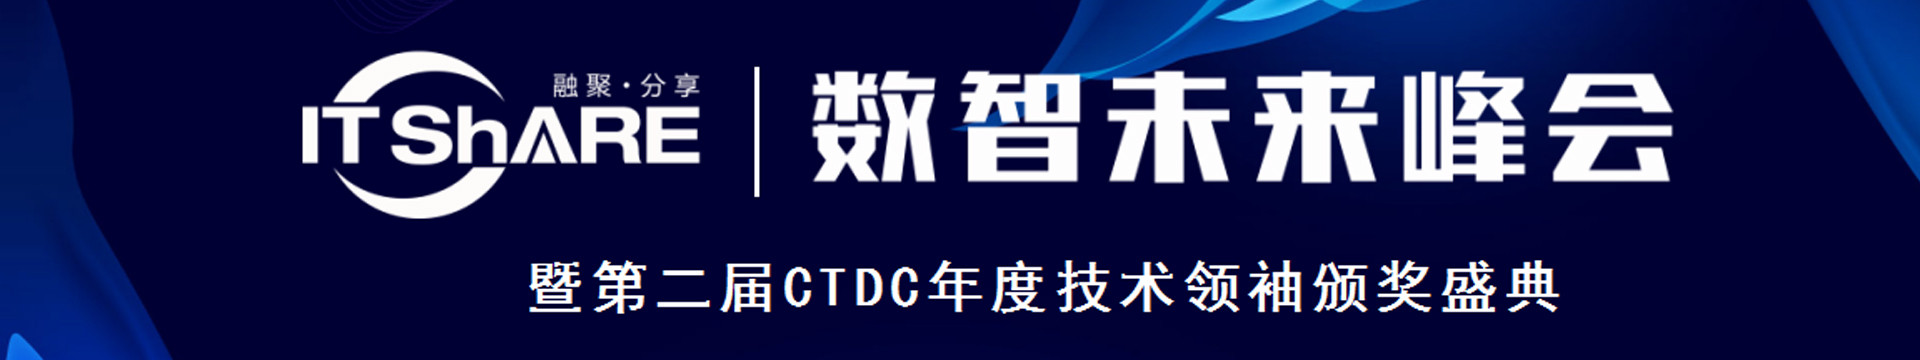 ITShare数智创享未来峰会第二届CTDC年度技术领袖颁奖盛典